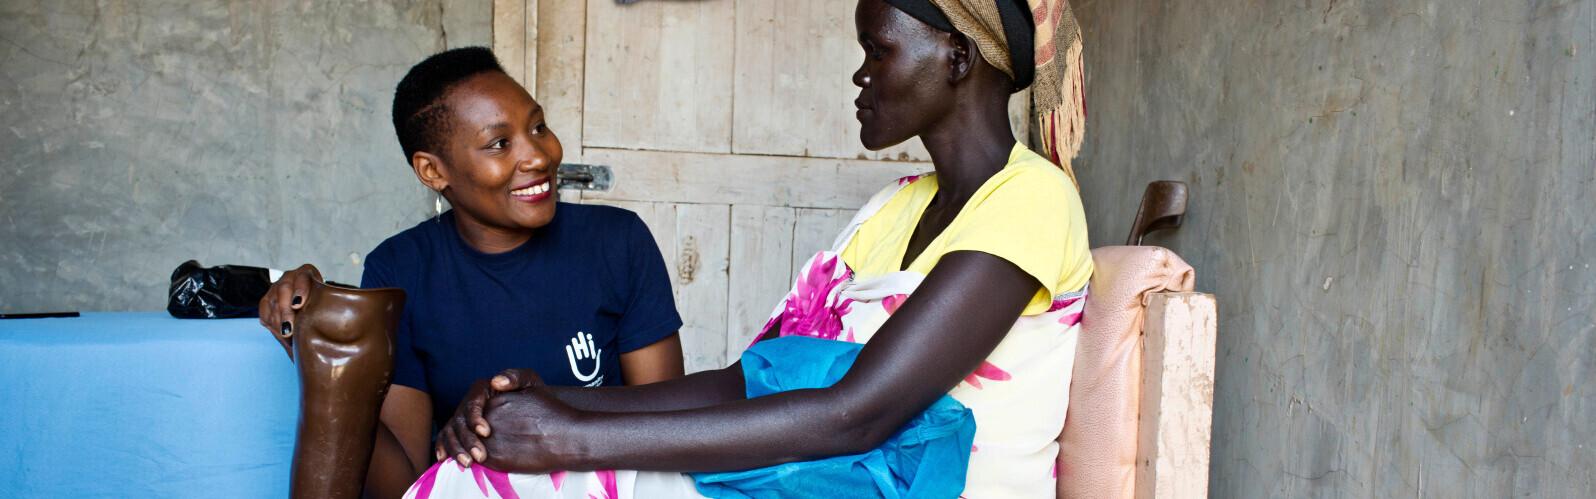 Kenia: Achol hat durch eine Schussverletzung ein Bein verloren. Von HI bekam sie eine Prothese 